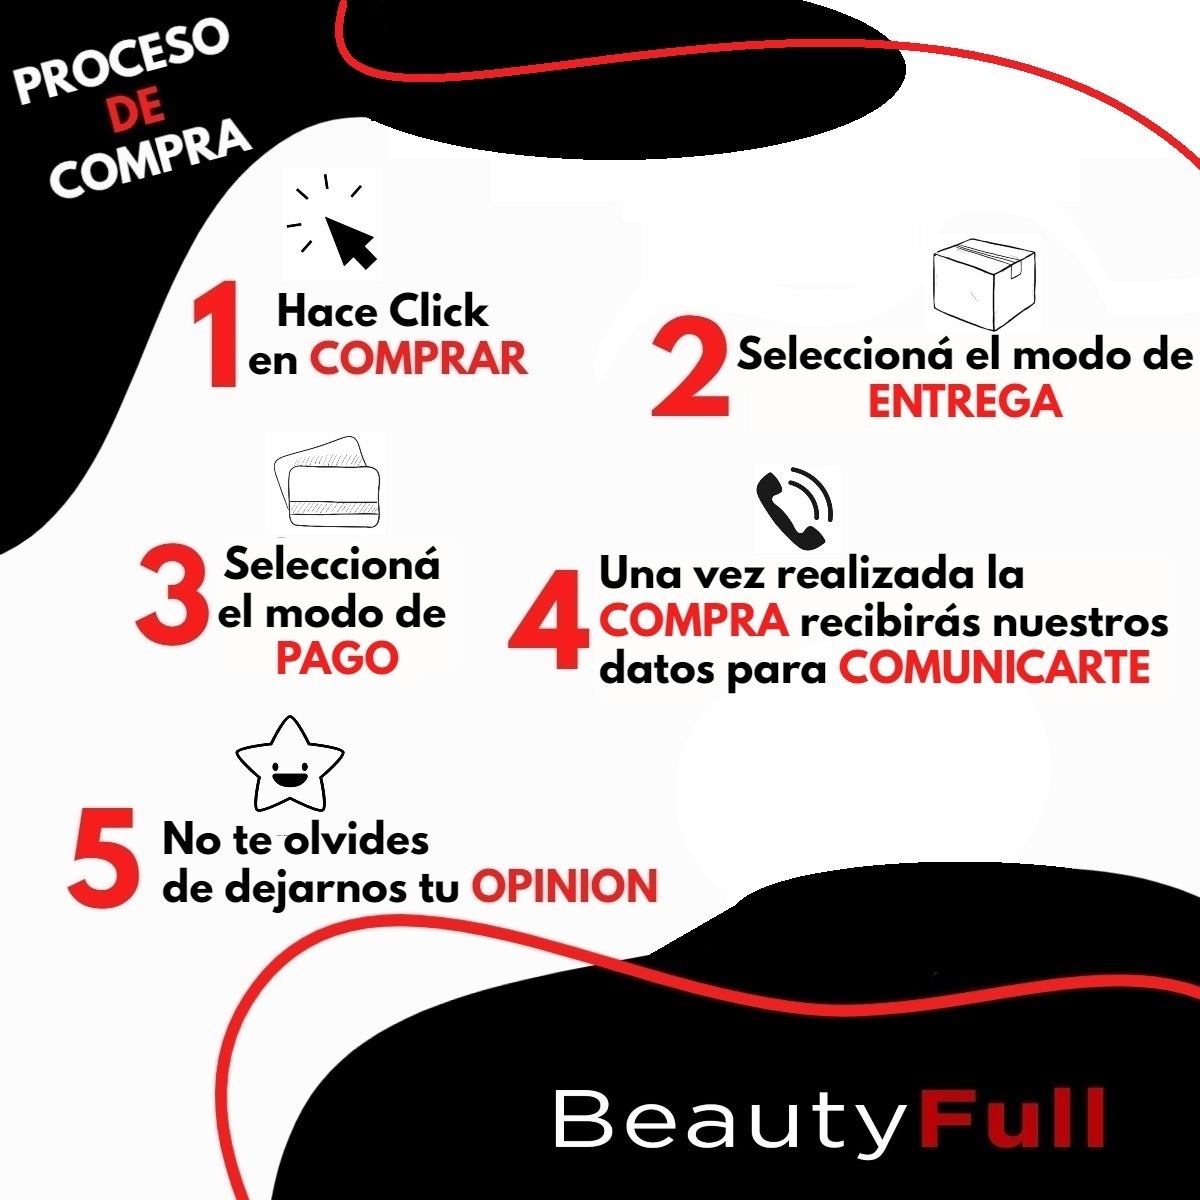 10 Capas De Corte Profesional Las Kapas A Eleccion Barbero - Beautyfull